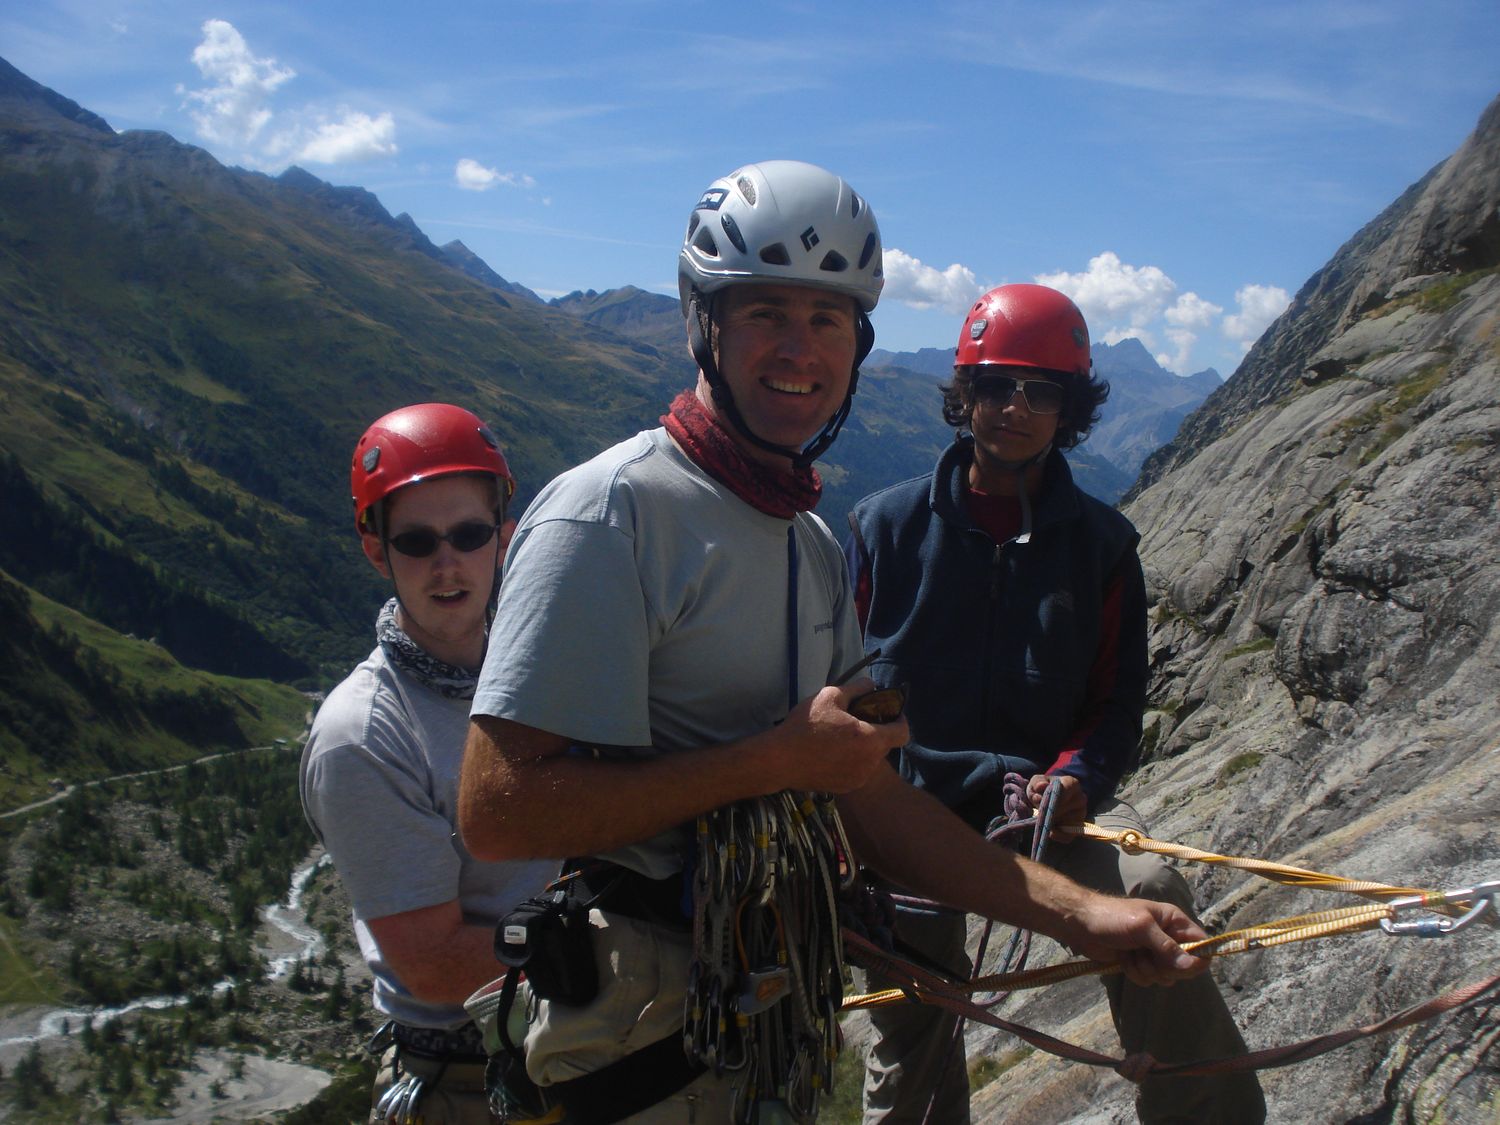  Rock climbing in the Val d’Aosta, Italy 